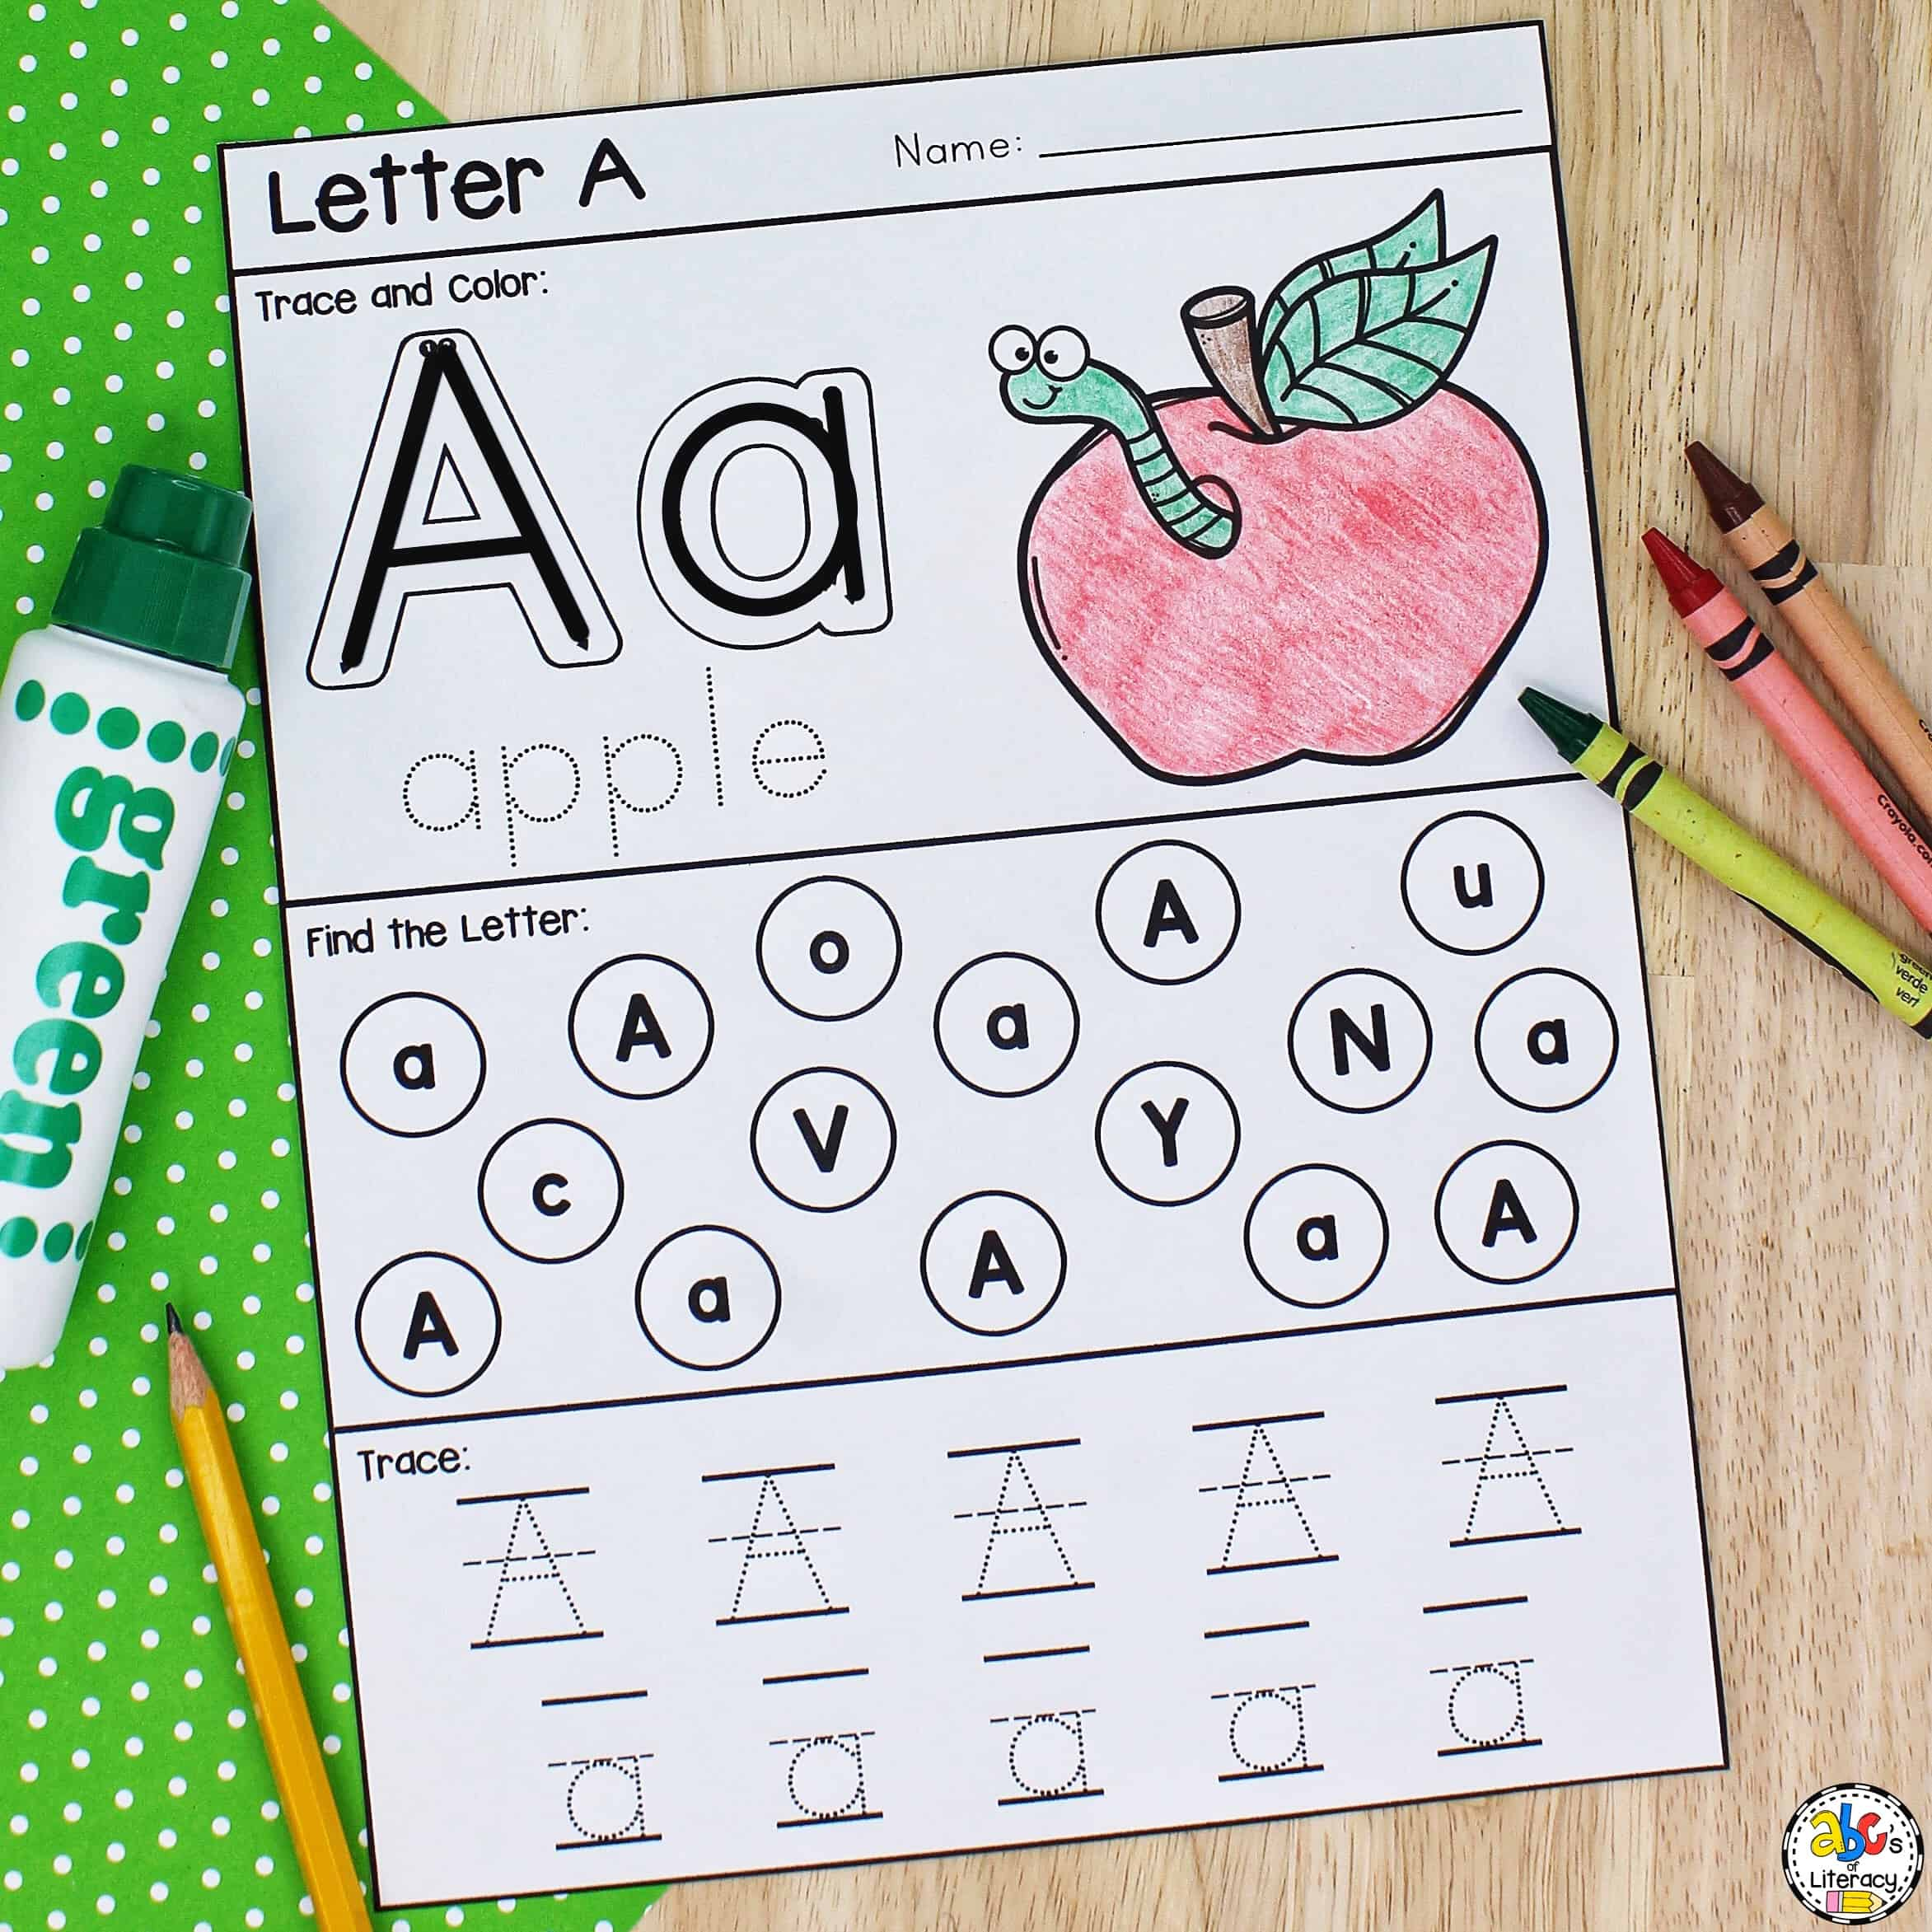 Letter A Printable: Preschool Worksheet For Letter Recognition with Free Printable Letter Recognition Worksheets